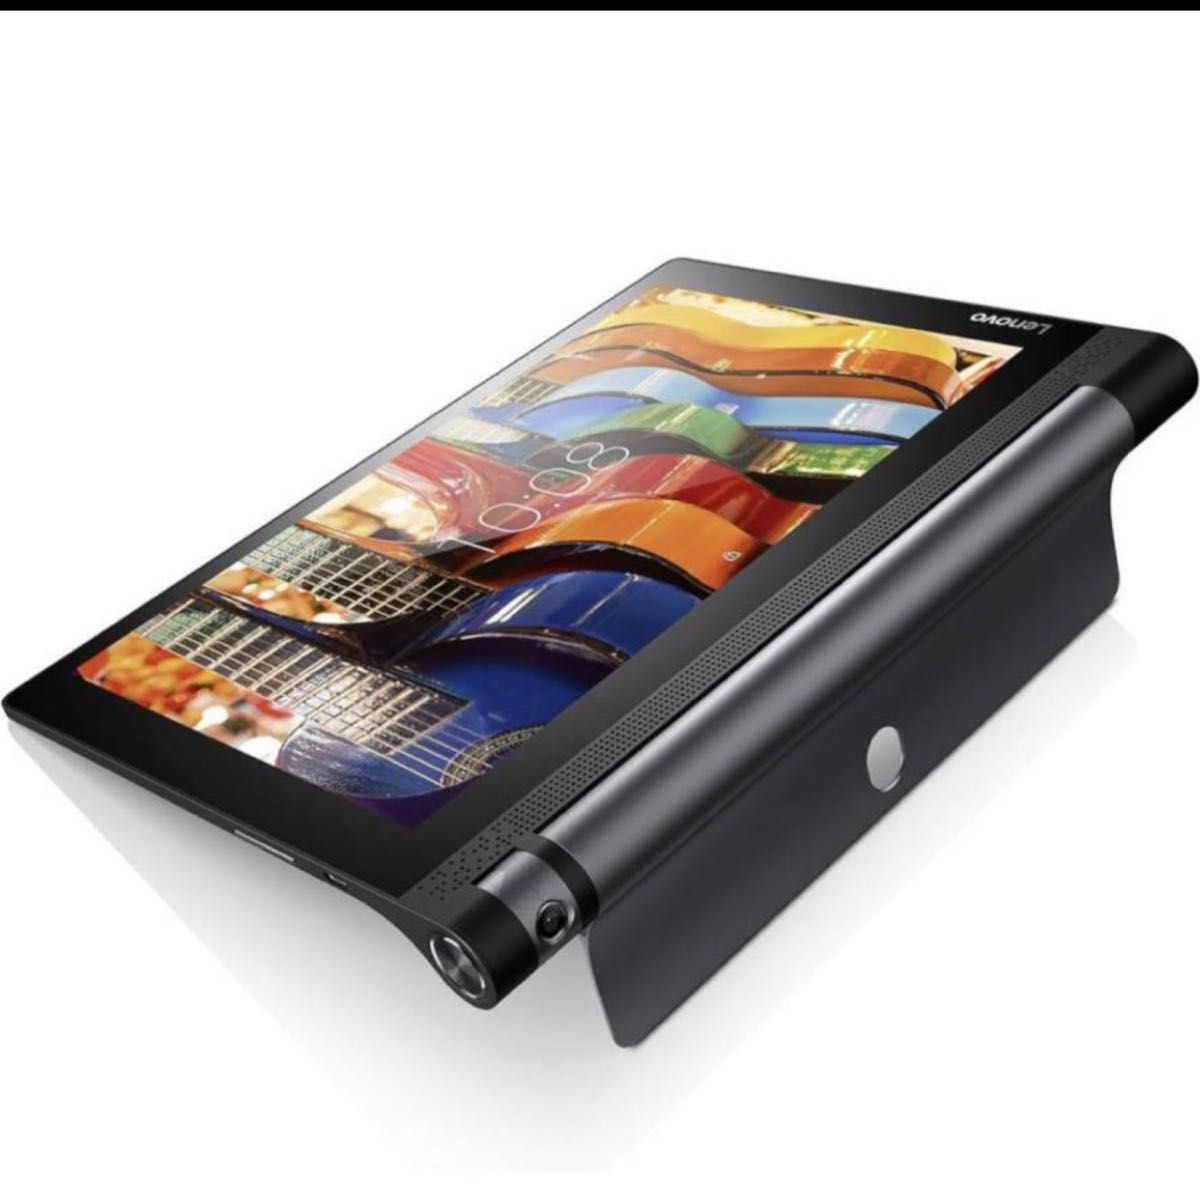 レノボ YOGA YT3-X50F Android 6.0.1 タブレットメモリ 16GB・メモリ 2GB 美品 